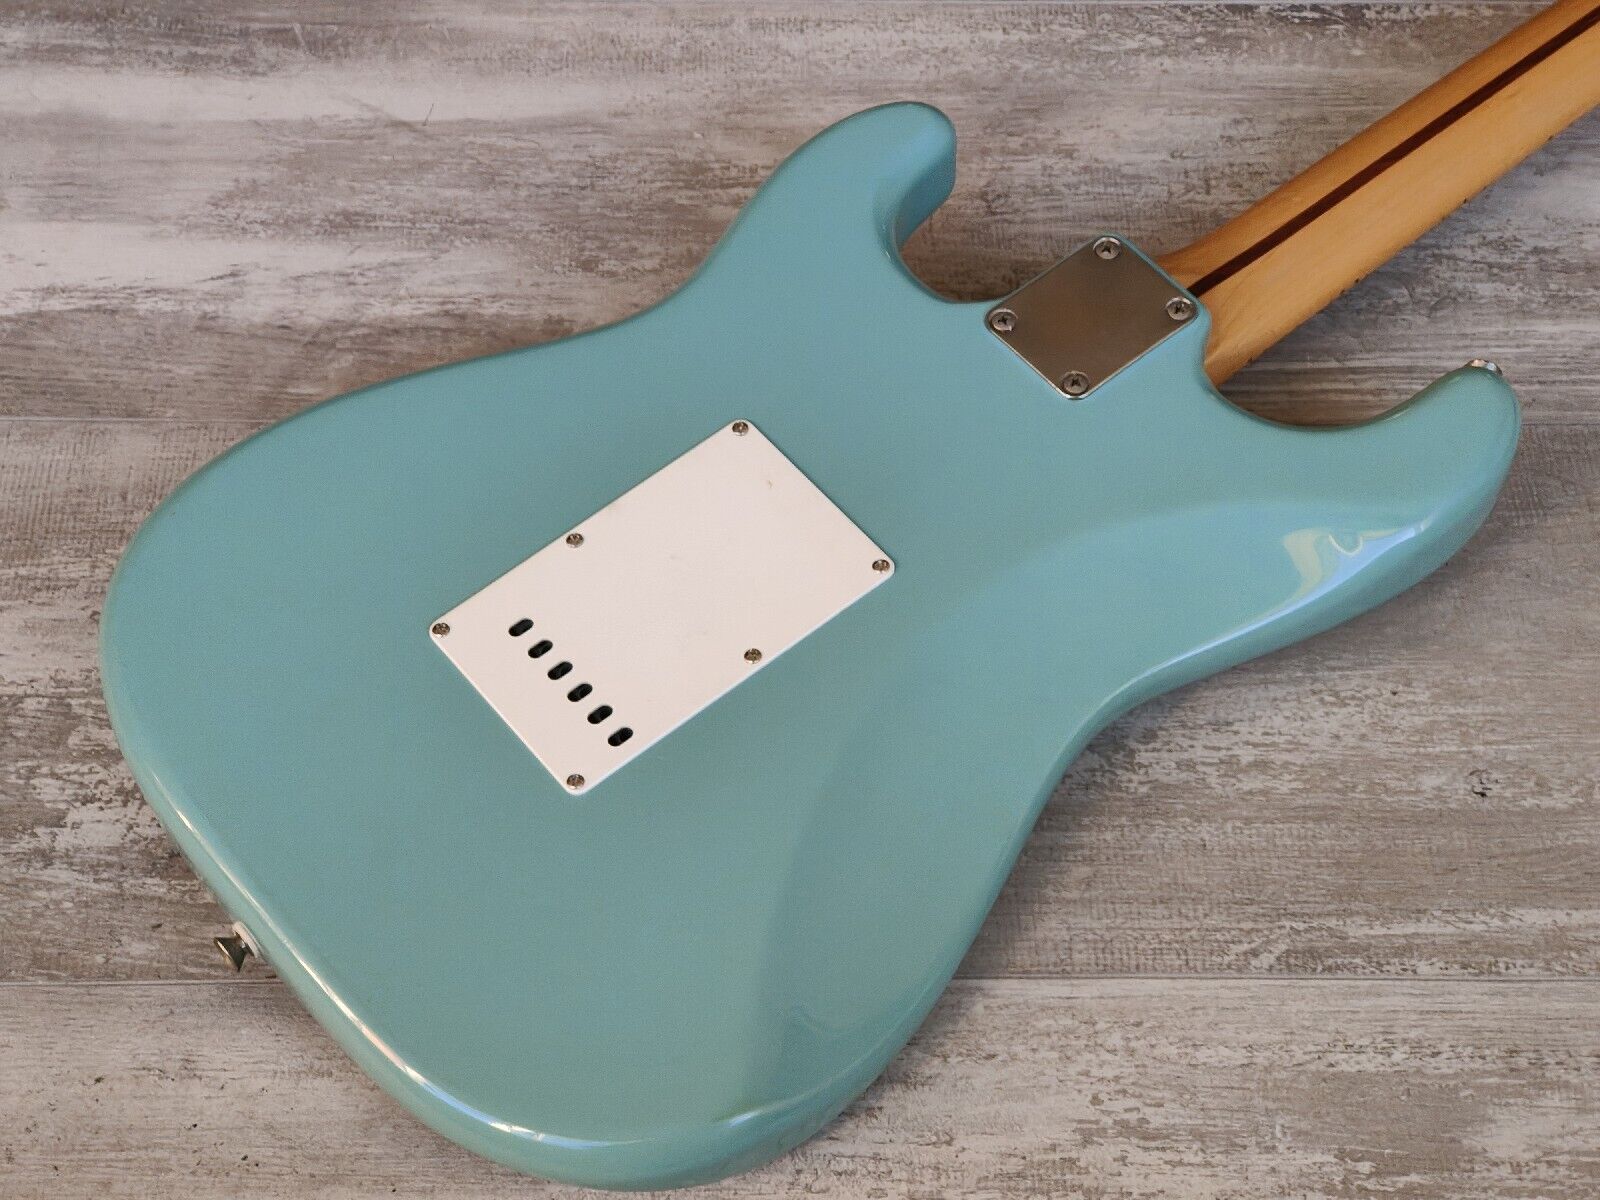 1989 Fender Japan Stratocaster Standard (Refinished Daphne Blue)